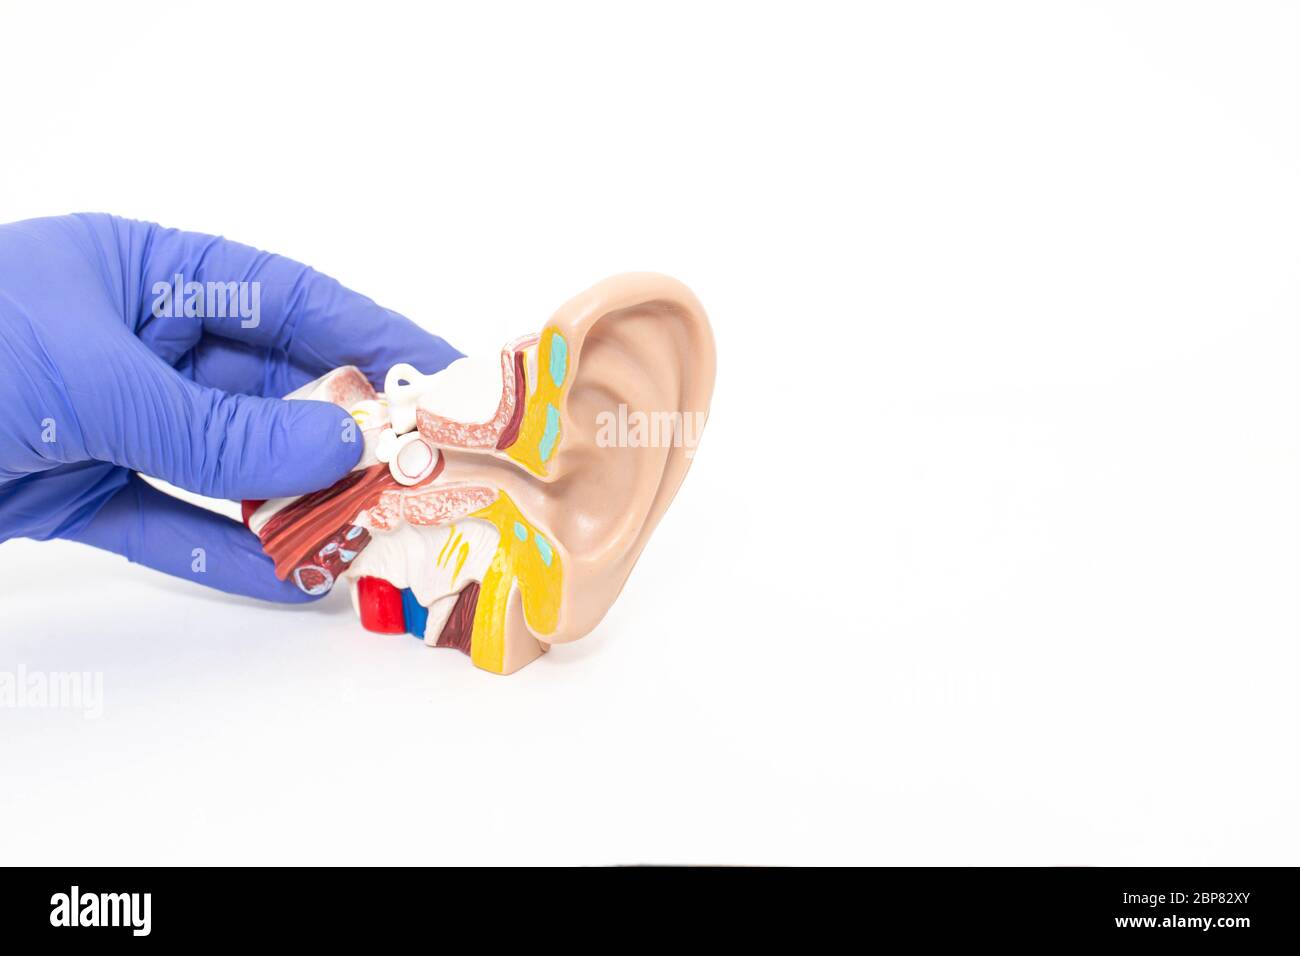 Doktor otolaryngologist hält ein verspieltes menschliches Ohr auf einem weißen Hintergrund. Das Konzept der Behandlung von Otitis media und anderen Ohrerkrankungen, Stockfoto